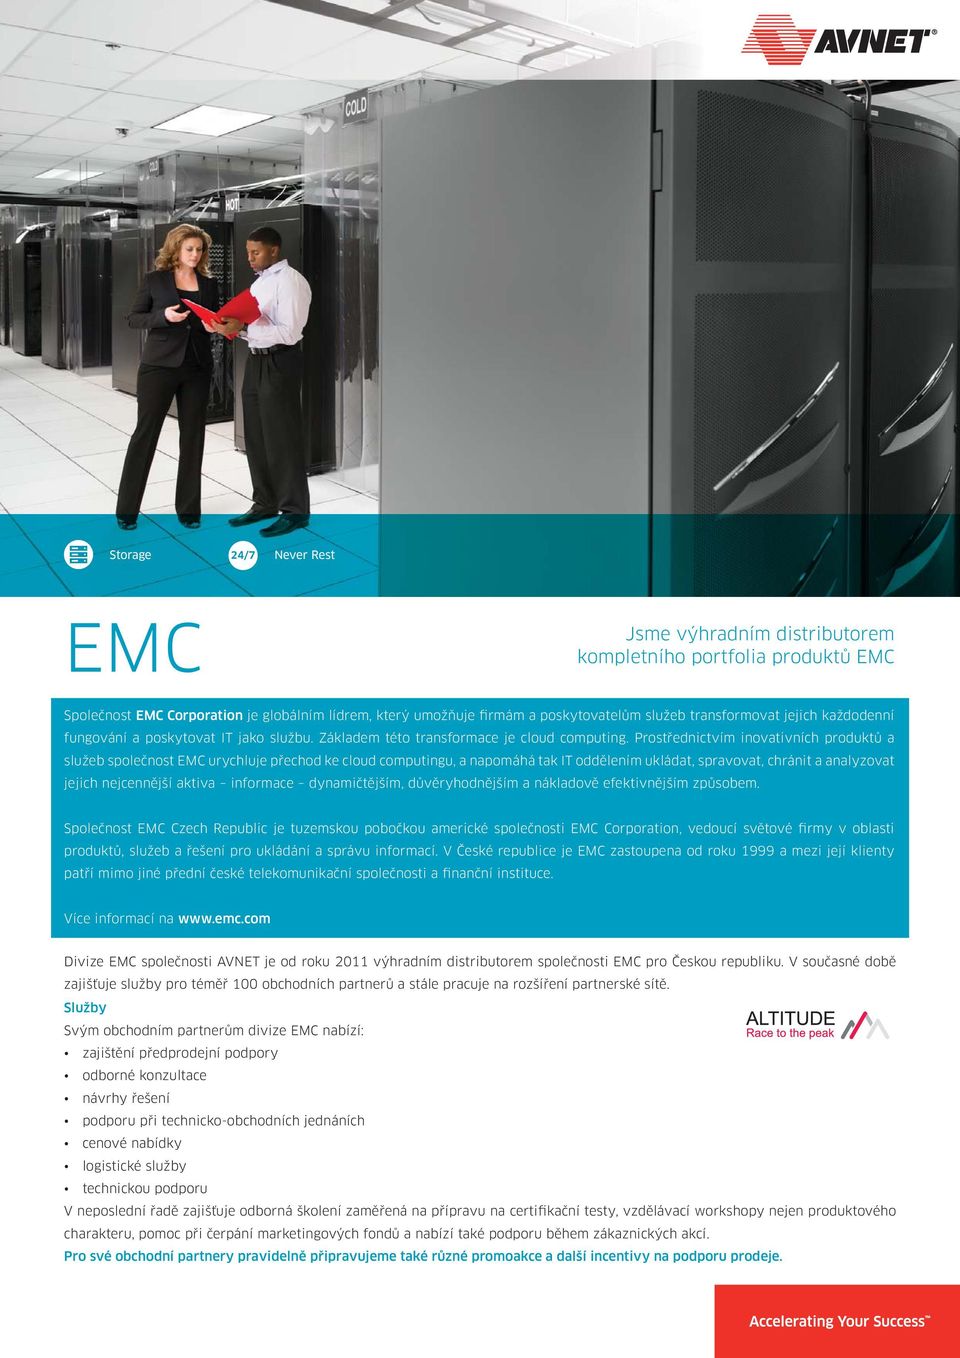 Prostřednictvím inovativních produktů a služeb společnost EMC urychluje přechod ke cloud computingu, a napomáhá tak IT oddělením ukládat, spravovat, chránit a analyzovat jejich nejcennější aktiva